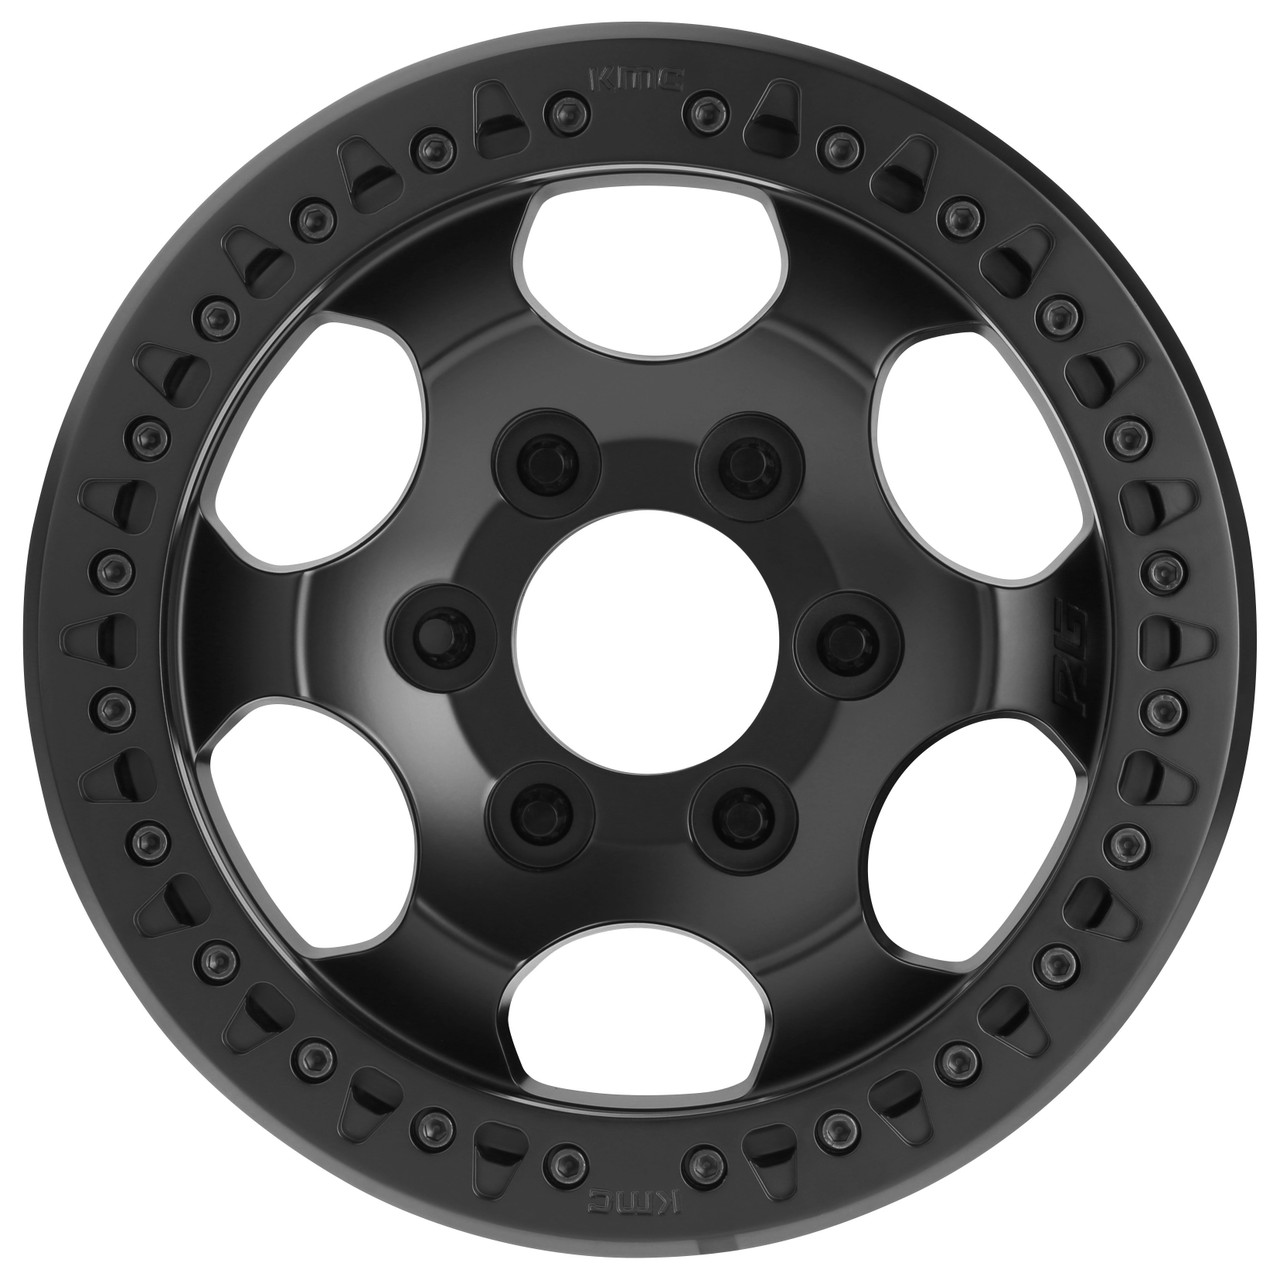 XD XD231 Rg Race Beadlock 17x8.5 6x6.5 Satin Black Wheel 17" 0mm Rim